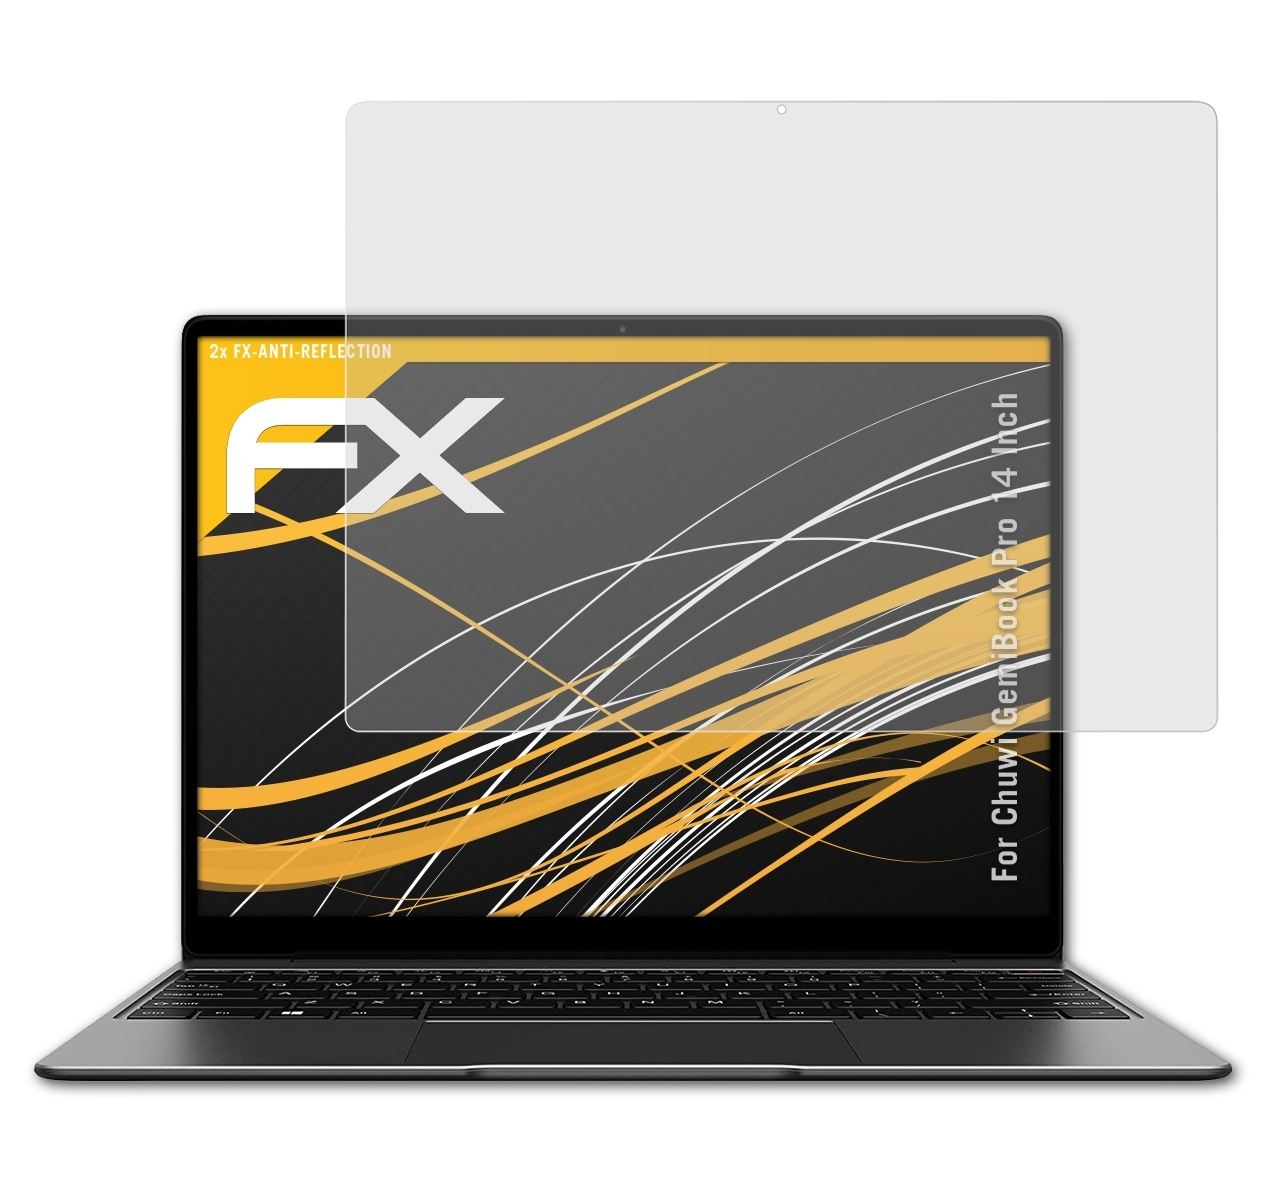 ATFOLIX 2x FX-Antireflex Chuwi Pro GemiBook (14 Displayschutz(für Inch))